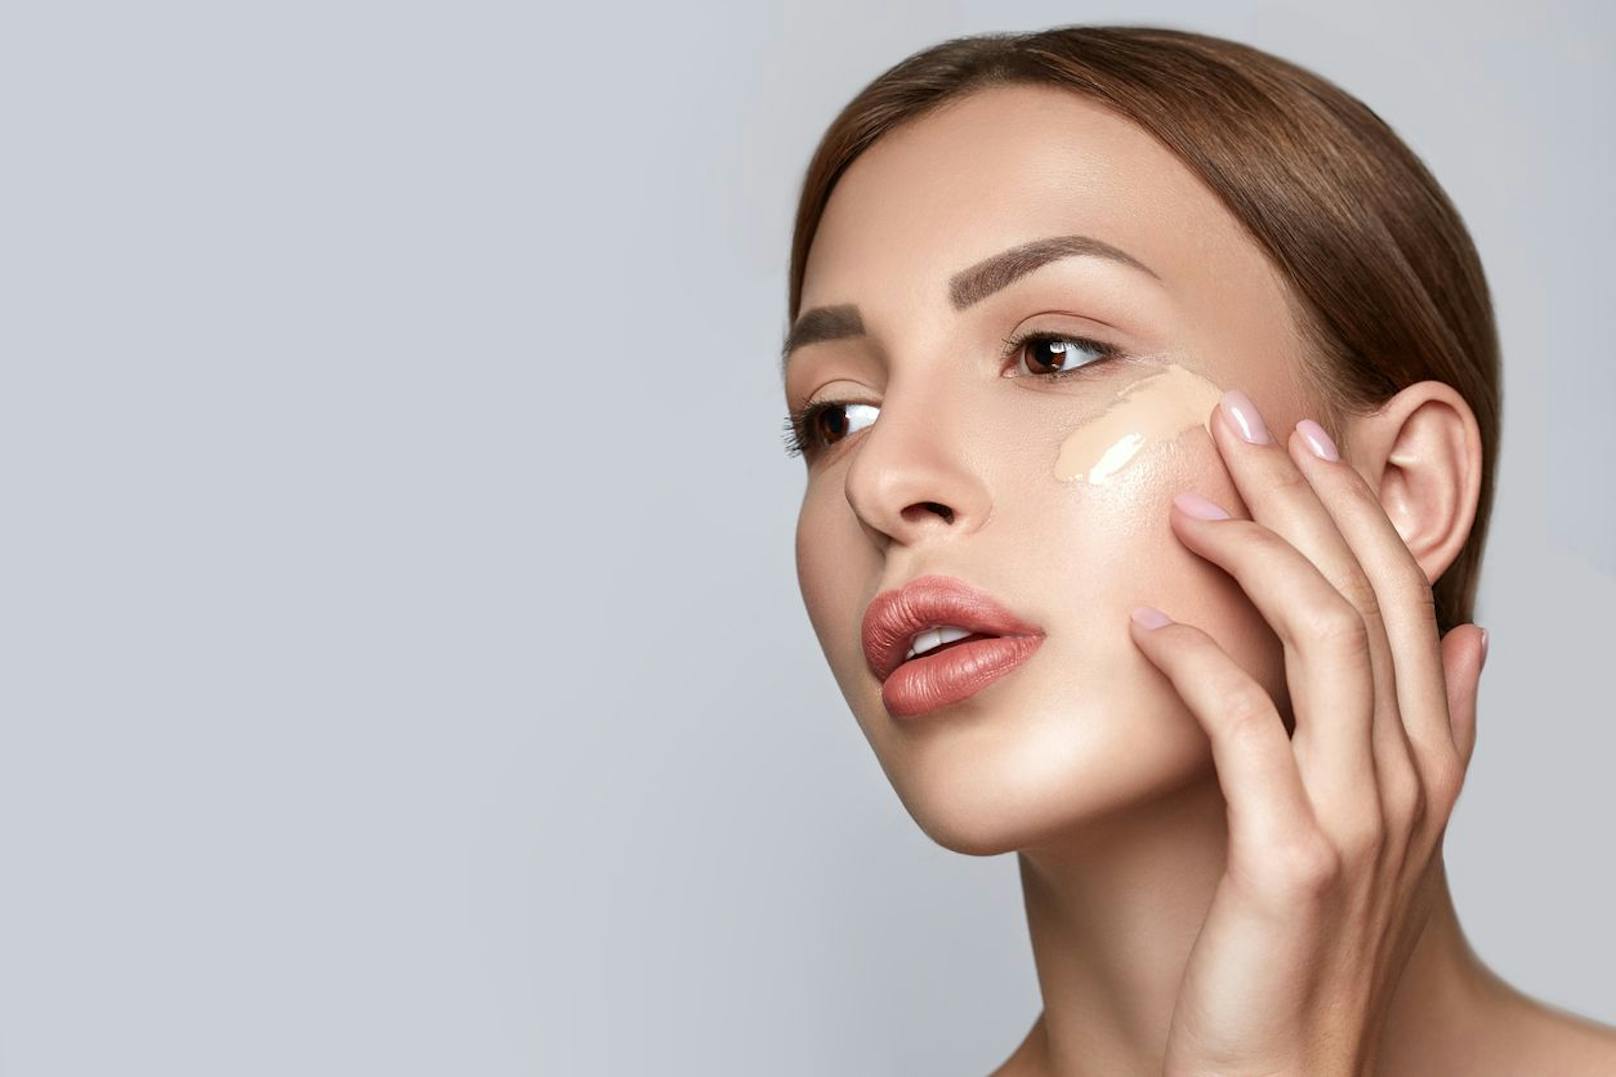 Bevor du deine Haut in Kosmetika eindeckst solltest du deinen Hautton ausgleichen. Eine semi-matte Foundation, die Pigmentflecke und Rötungen kaschiert kommt dir hier gelegen.